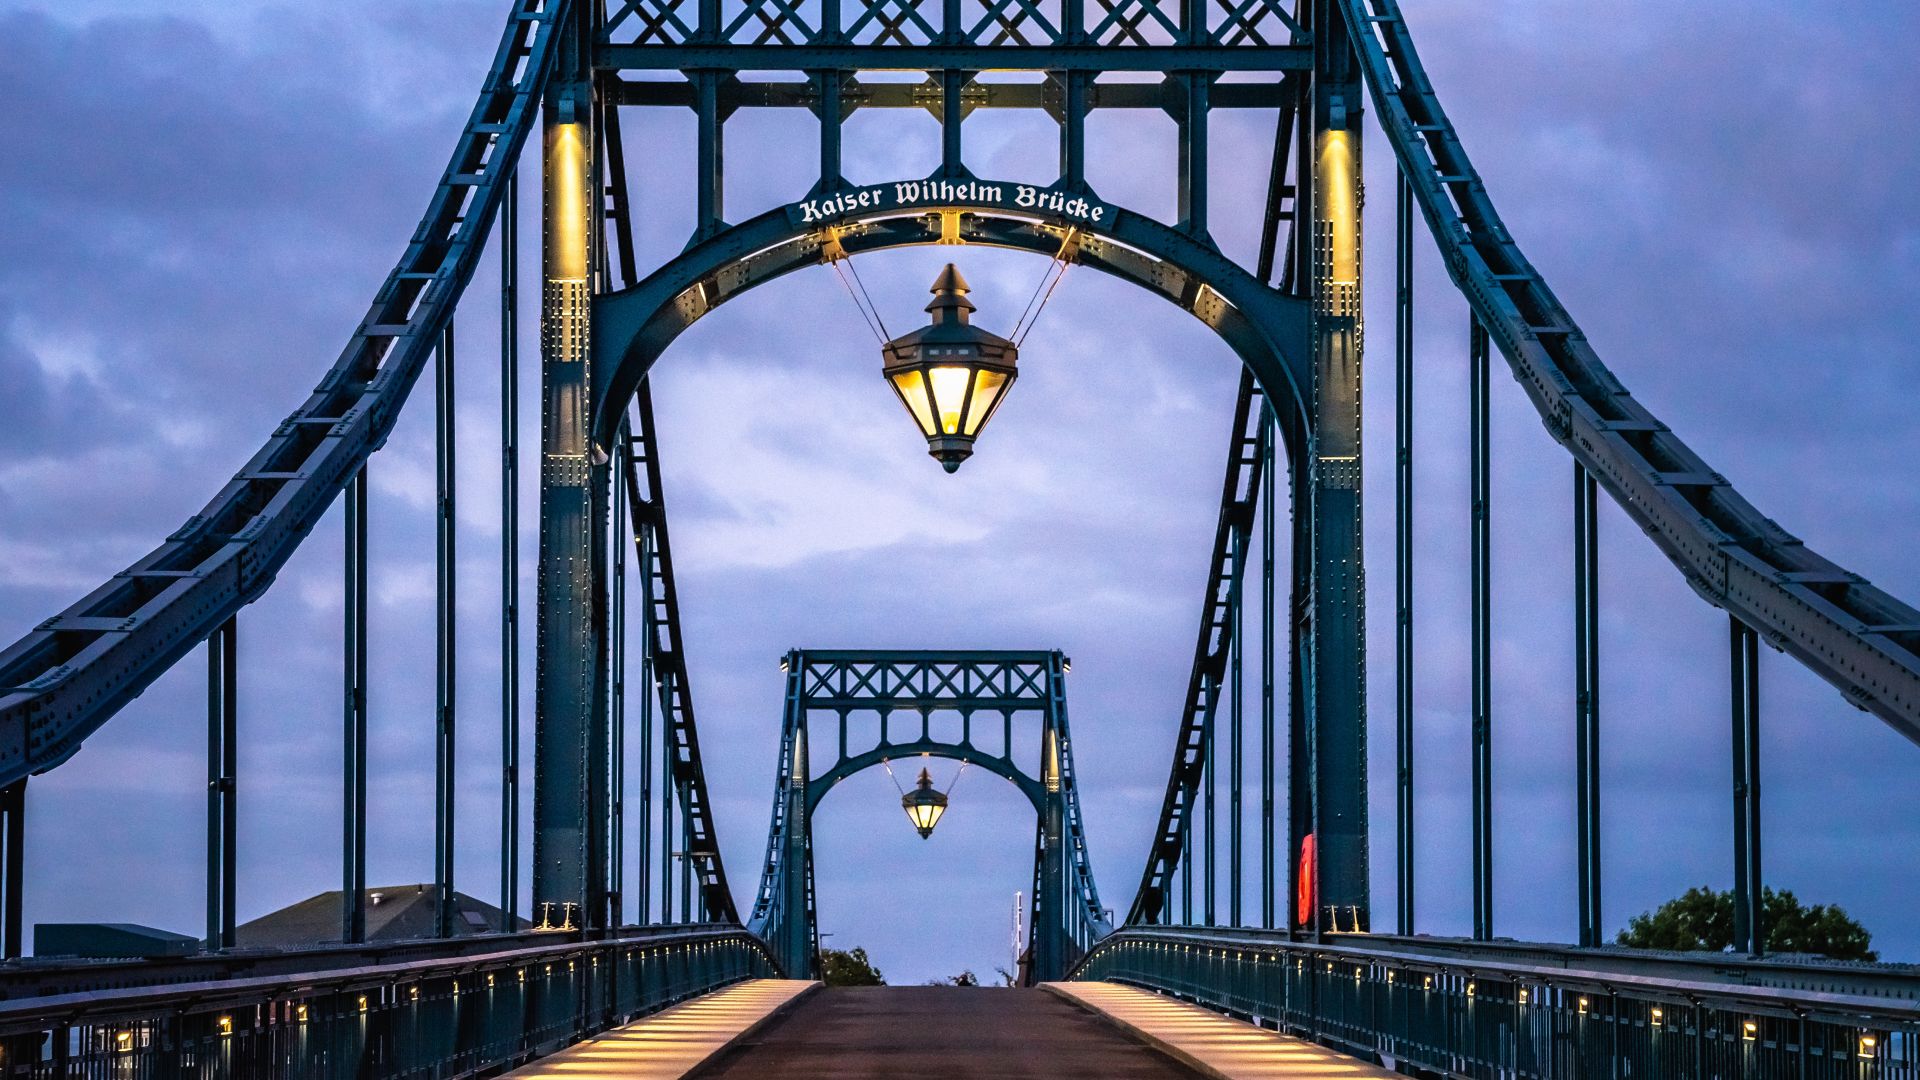 Wilhelmshaven: Kaiser Wilhelm Bridge at dusk